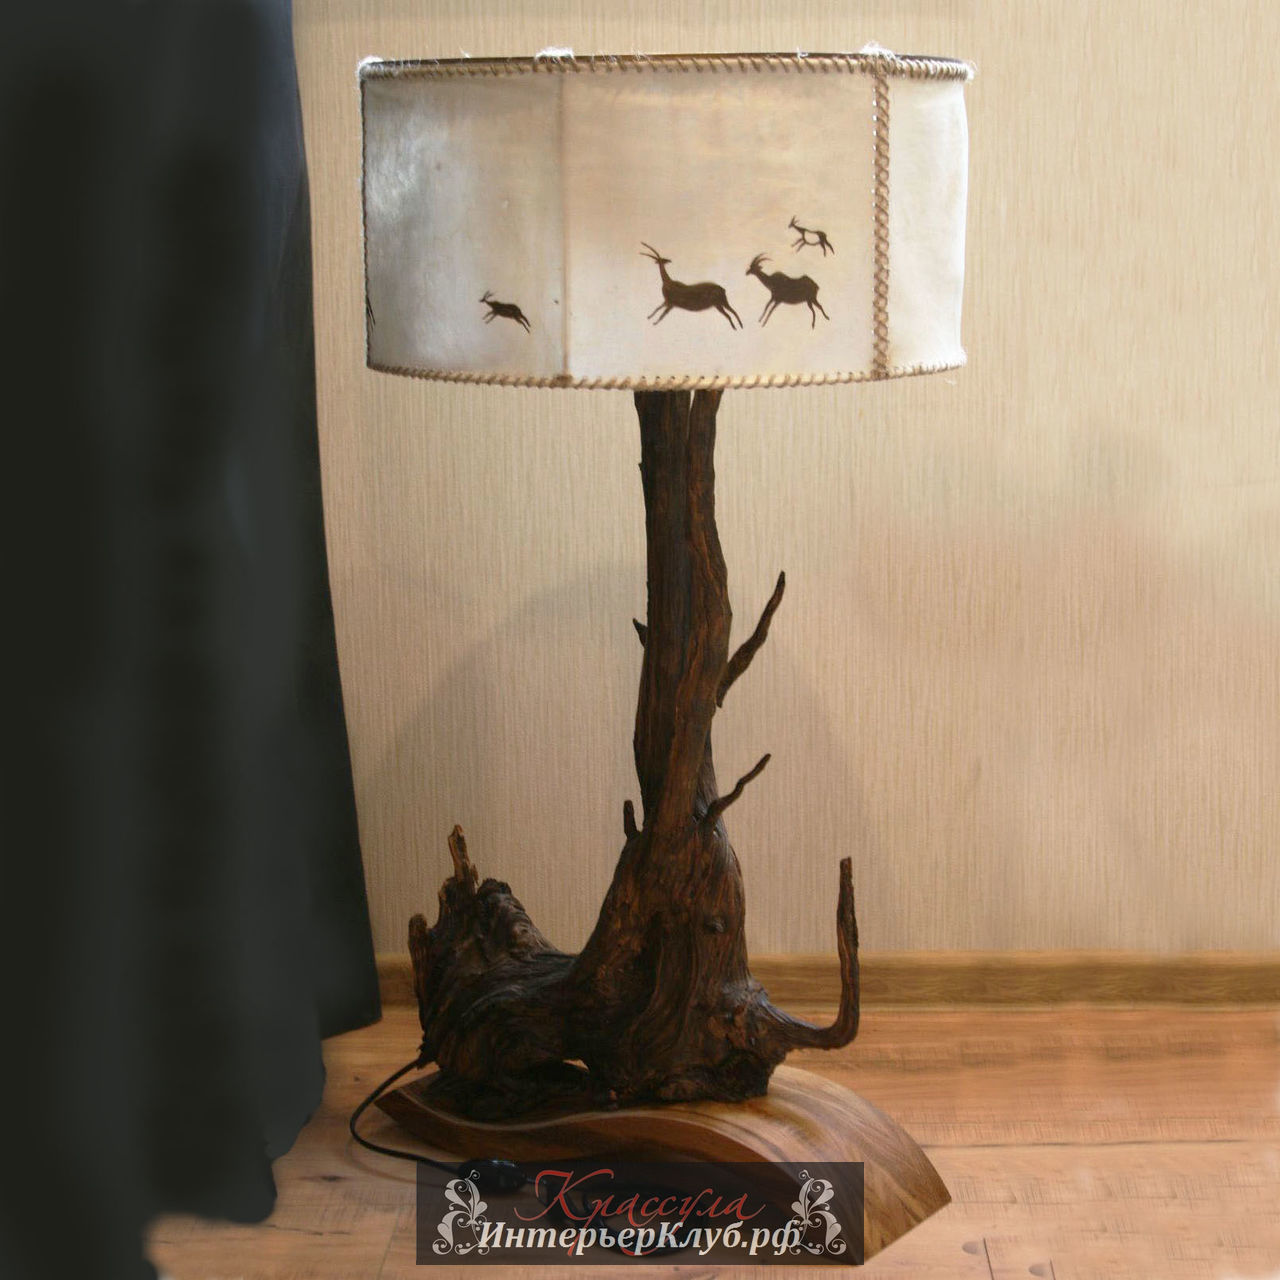 8 Авторский светильник из дерева ручной работы, напольный светильник из дерева ручной работы, авторский напольный светильник ручной работы